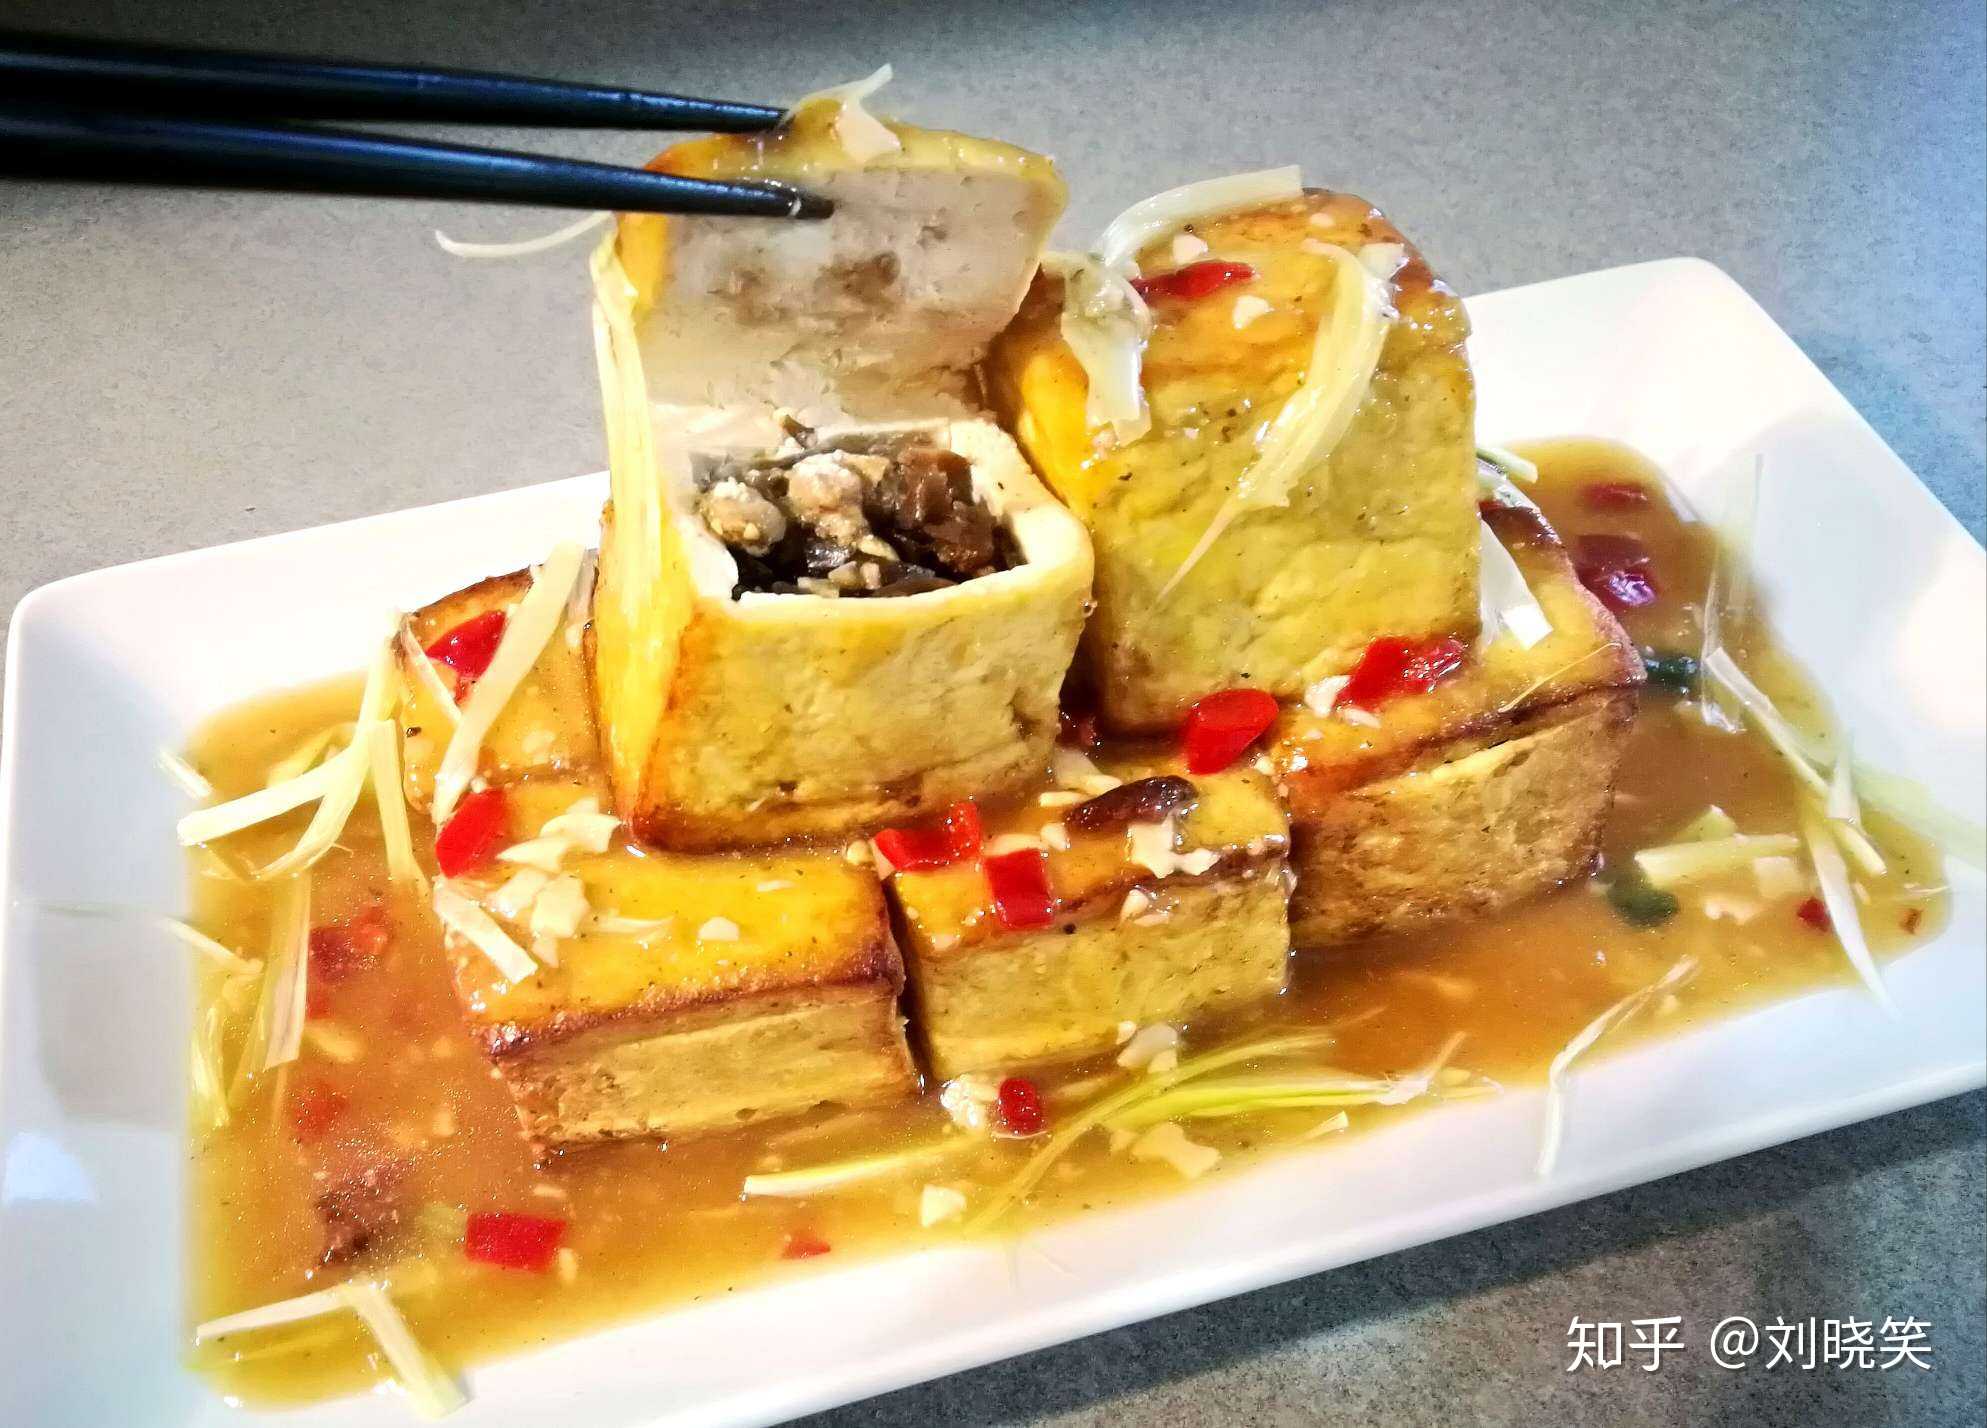 齐鲁名菜—博山豆腐箱,制作成功!传说乾隆下江南曾经吃过,赞口不绝.